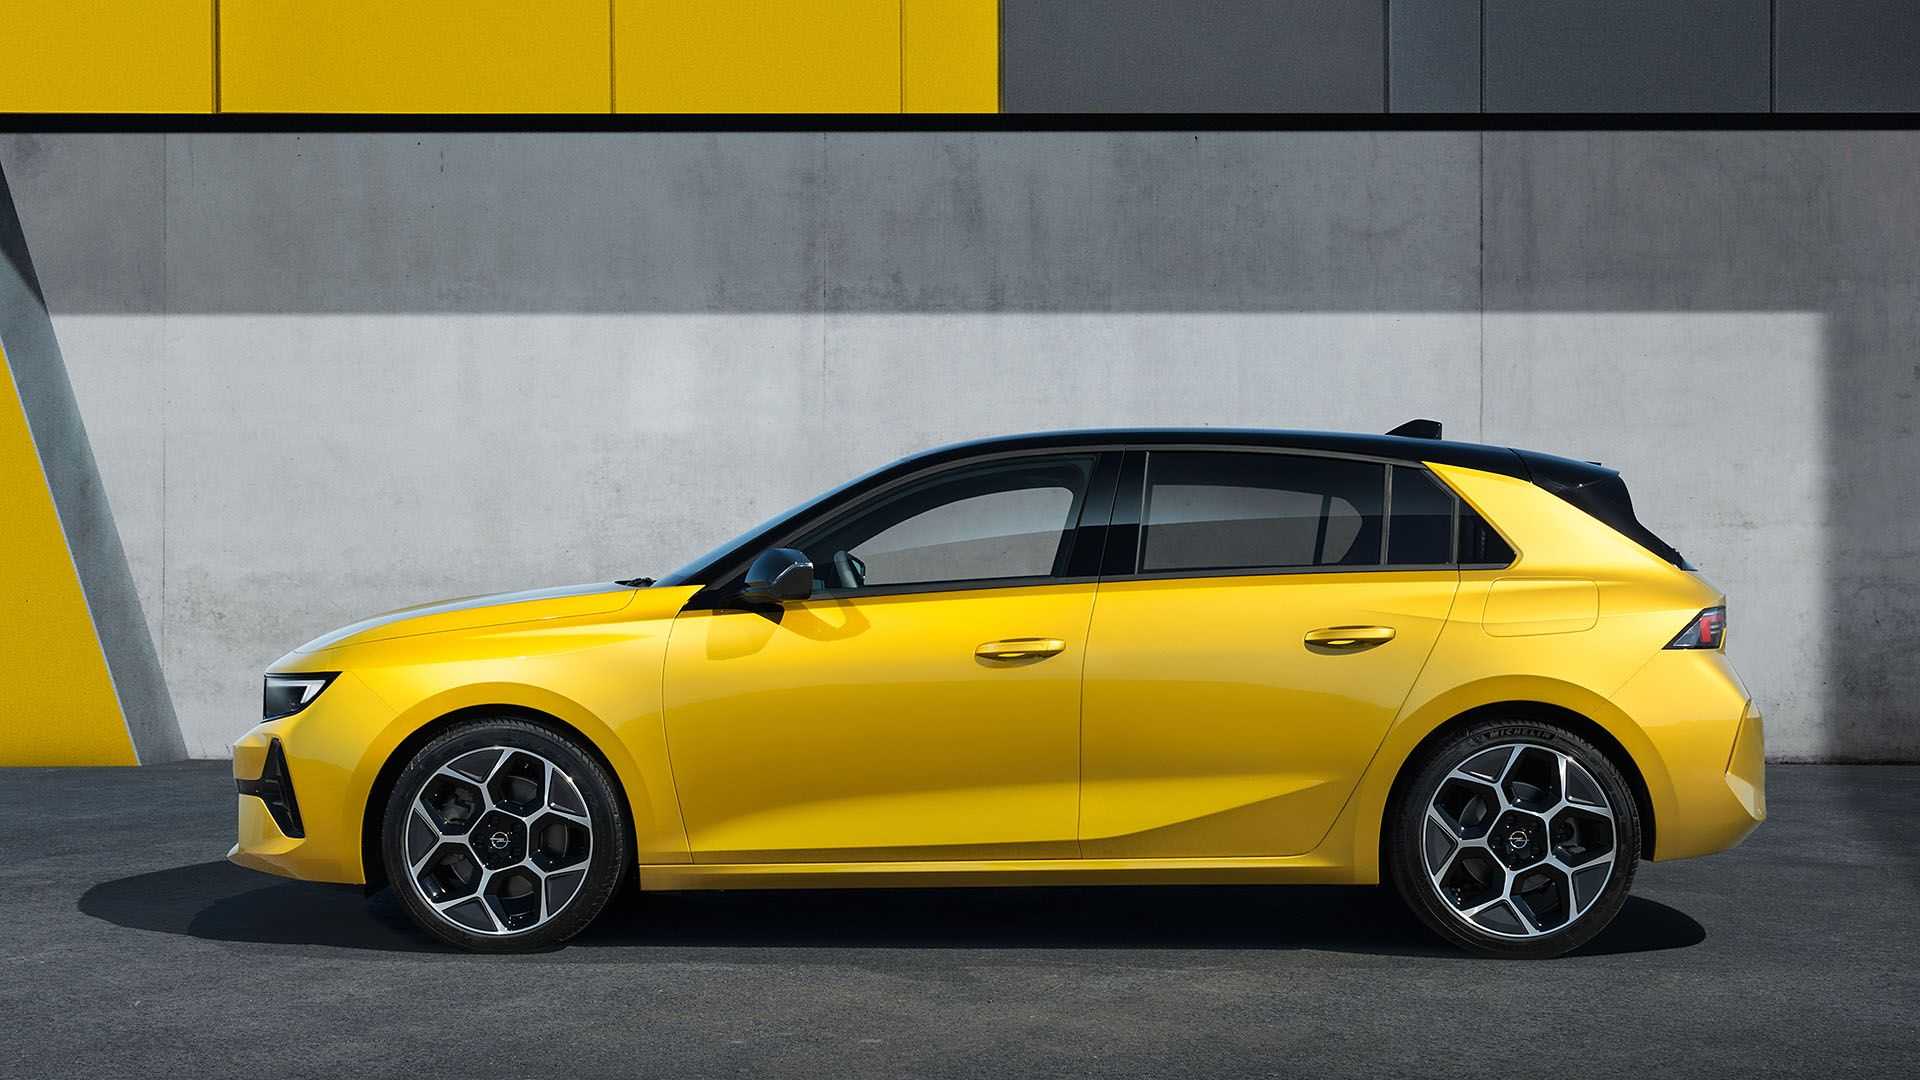 Официально дебютировал Opel Astra шестой генерации